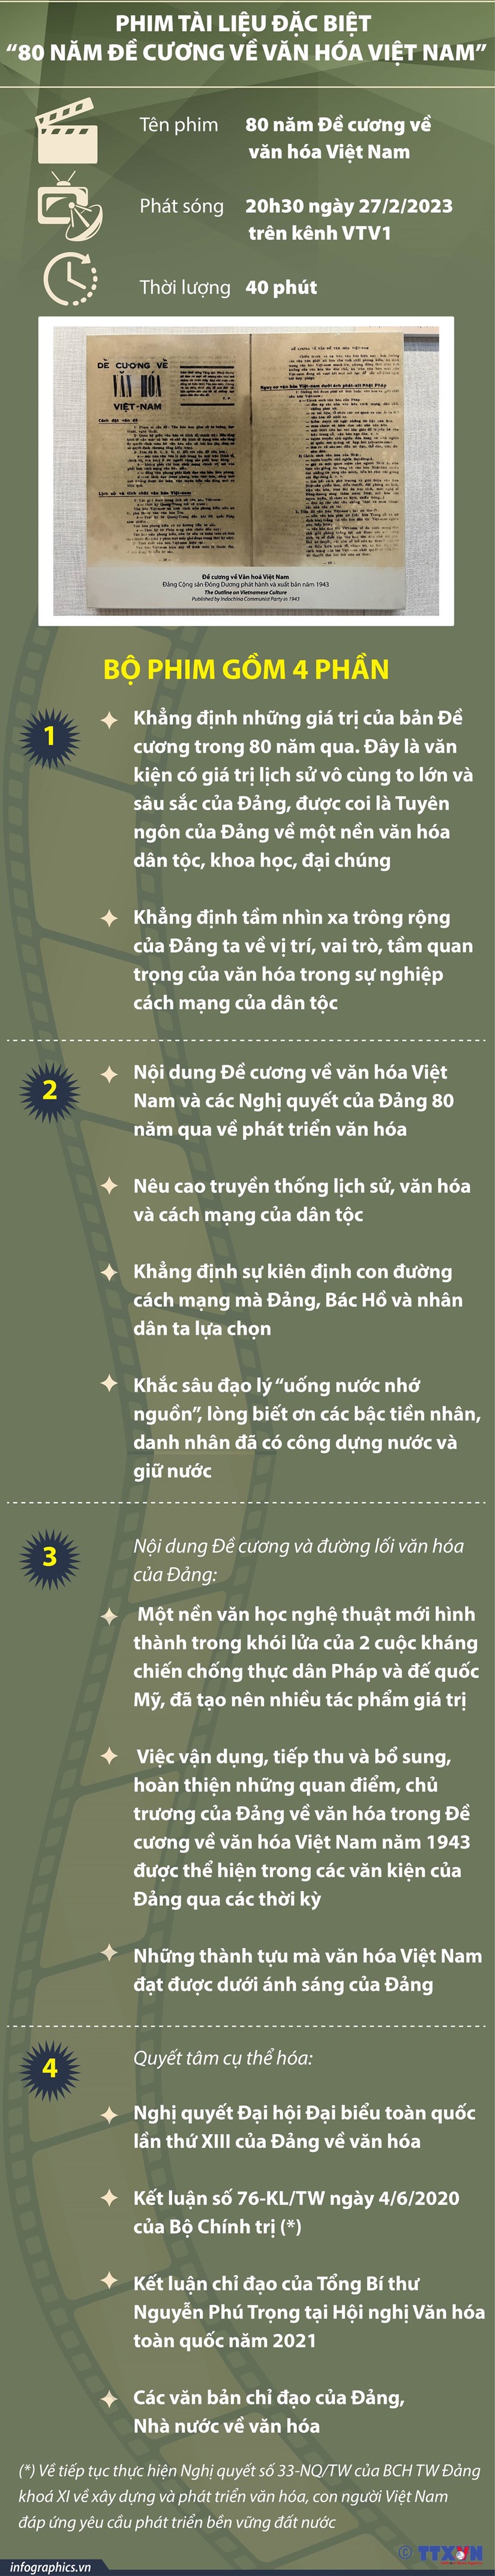 Nhiều hoạt động đặc sắc kỉ niệm 80 năm Đề cương về văn hóa Việt Nam - Ảnh 2.